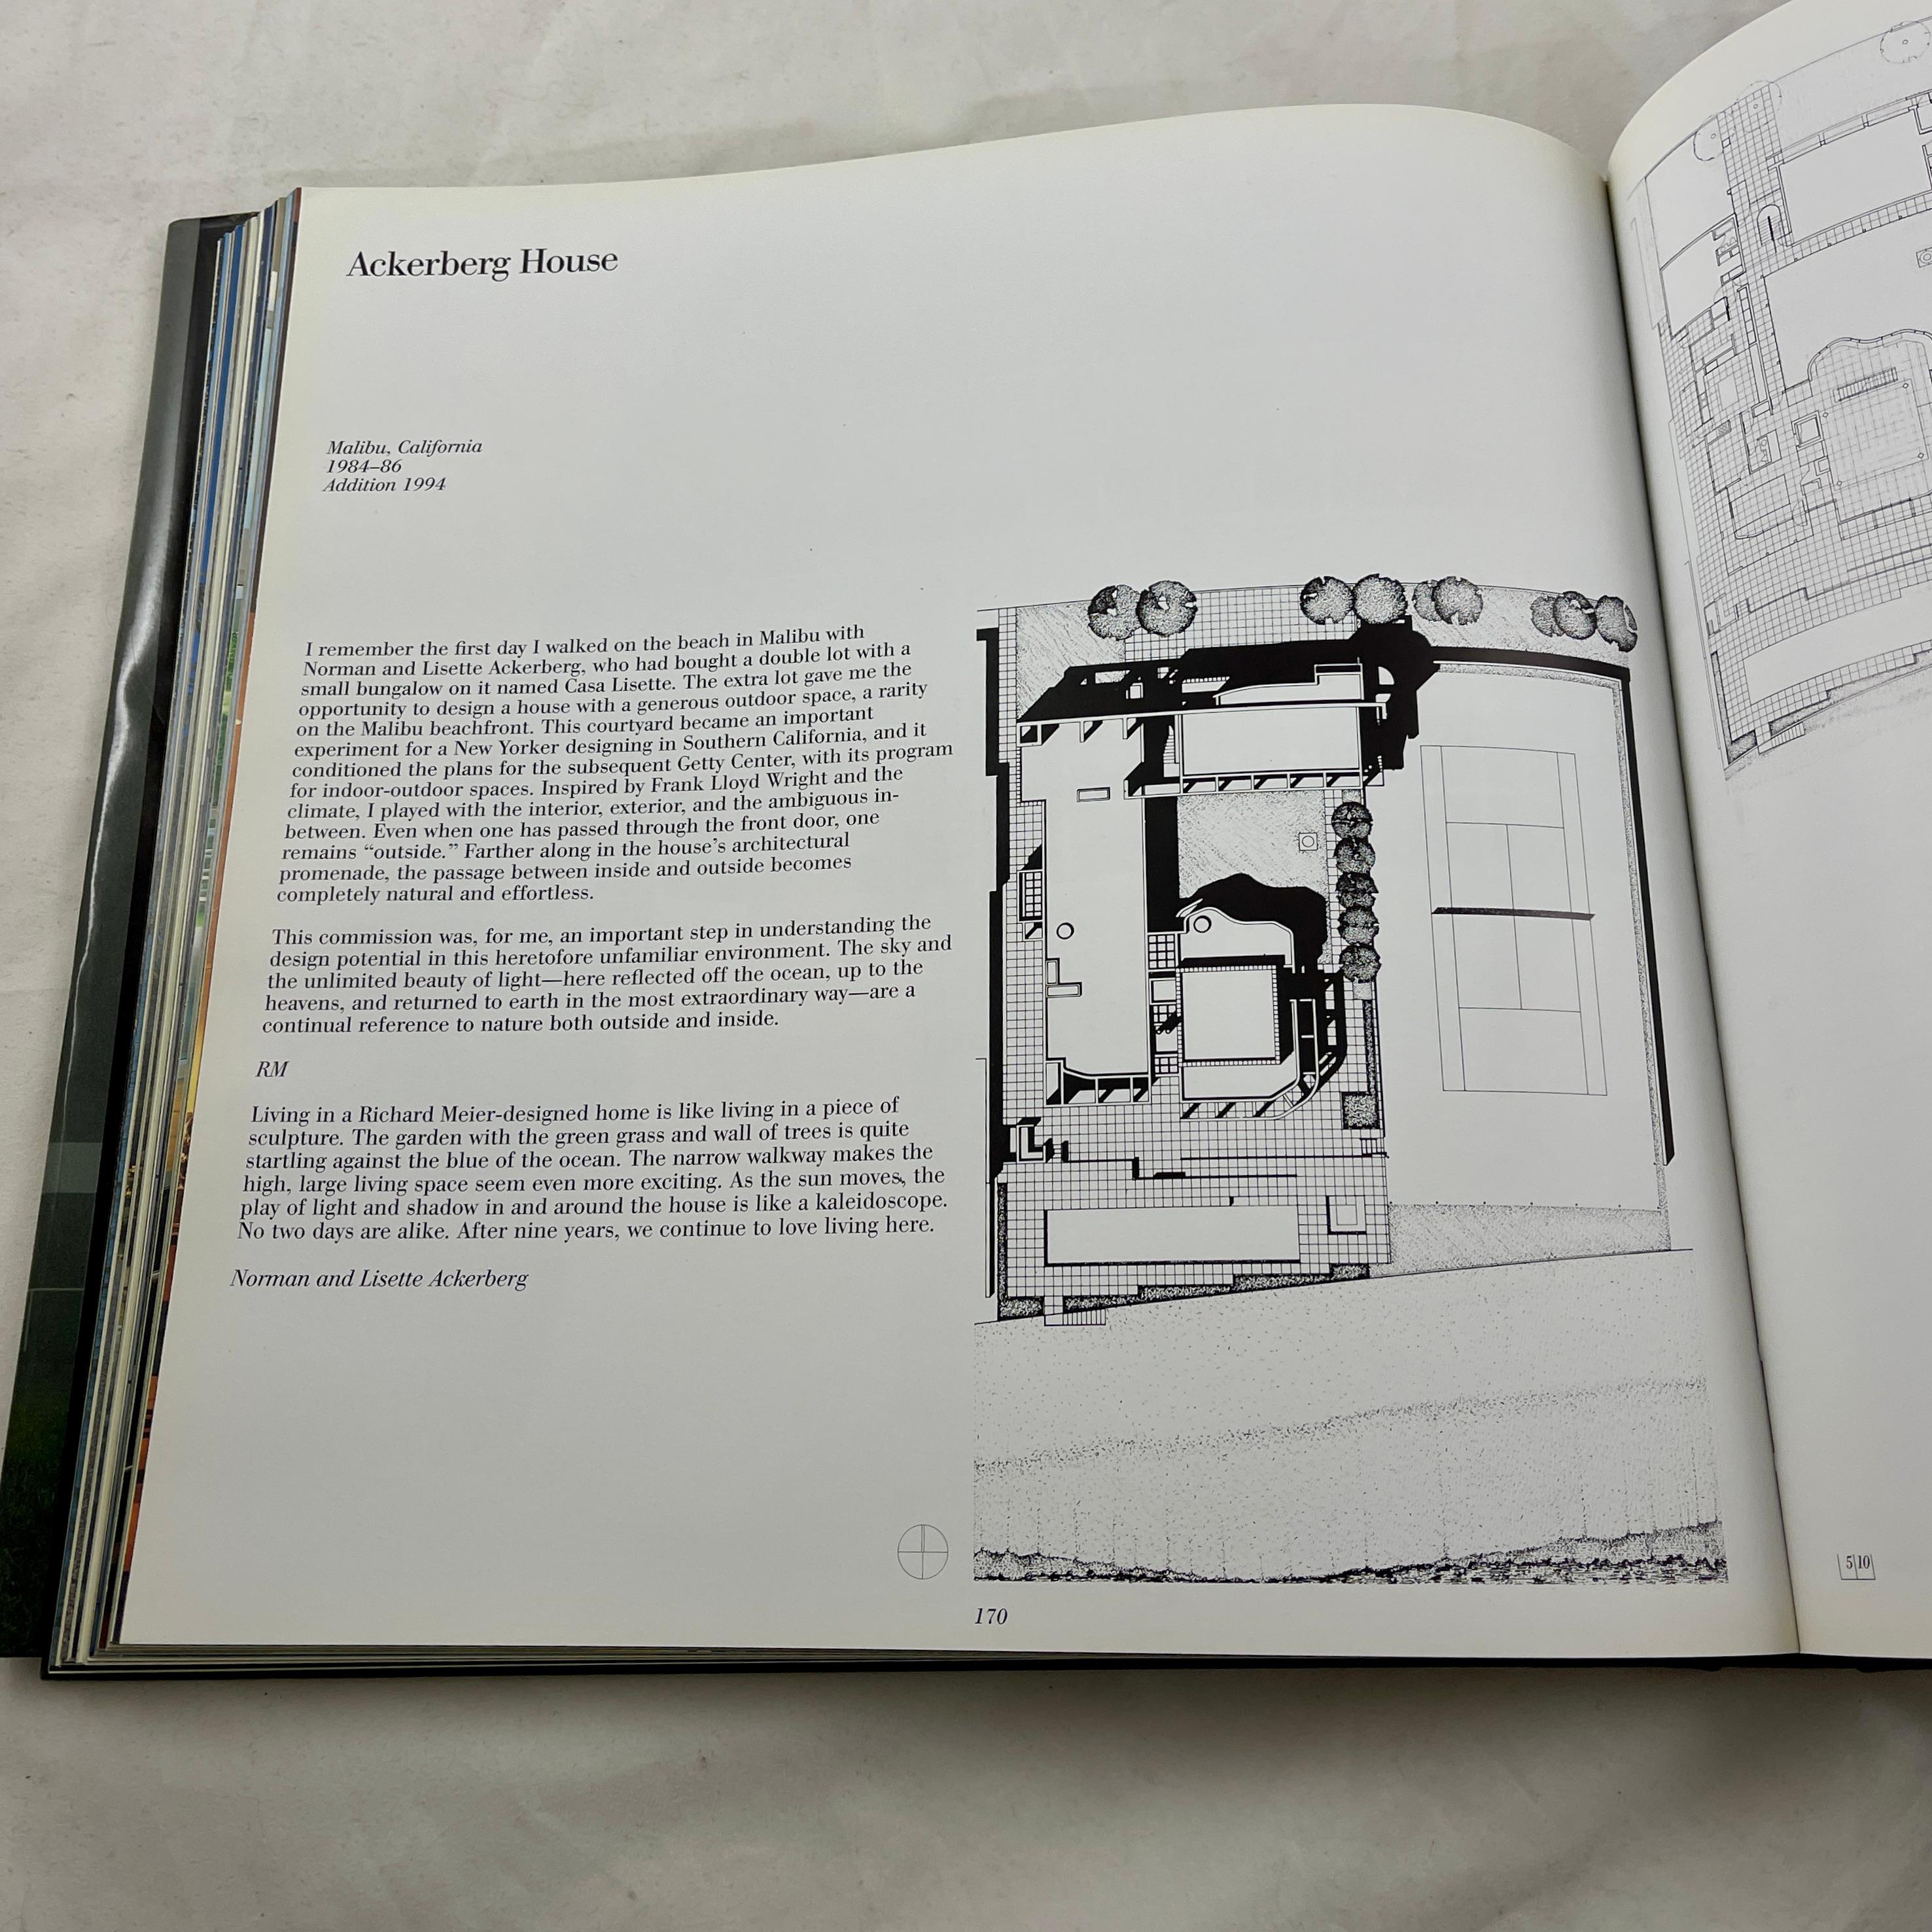 Richard Meier: Houses 1962/1997, Coffee Table Book - 1st Edition 1